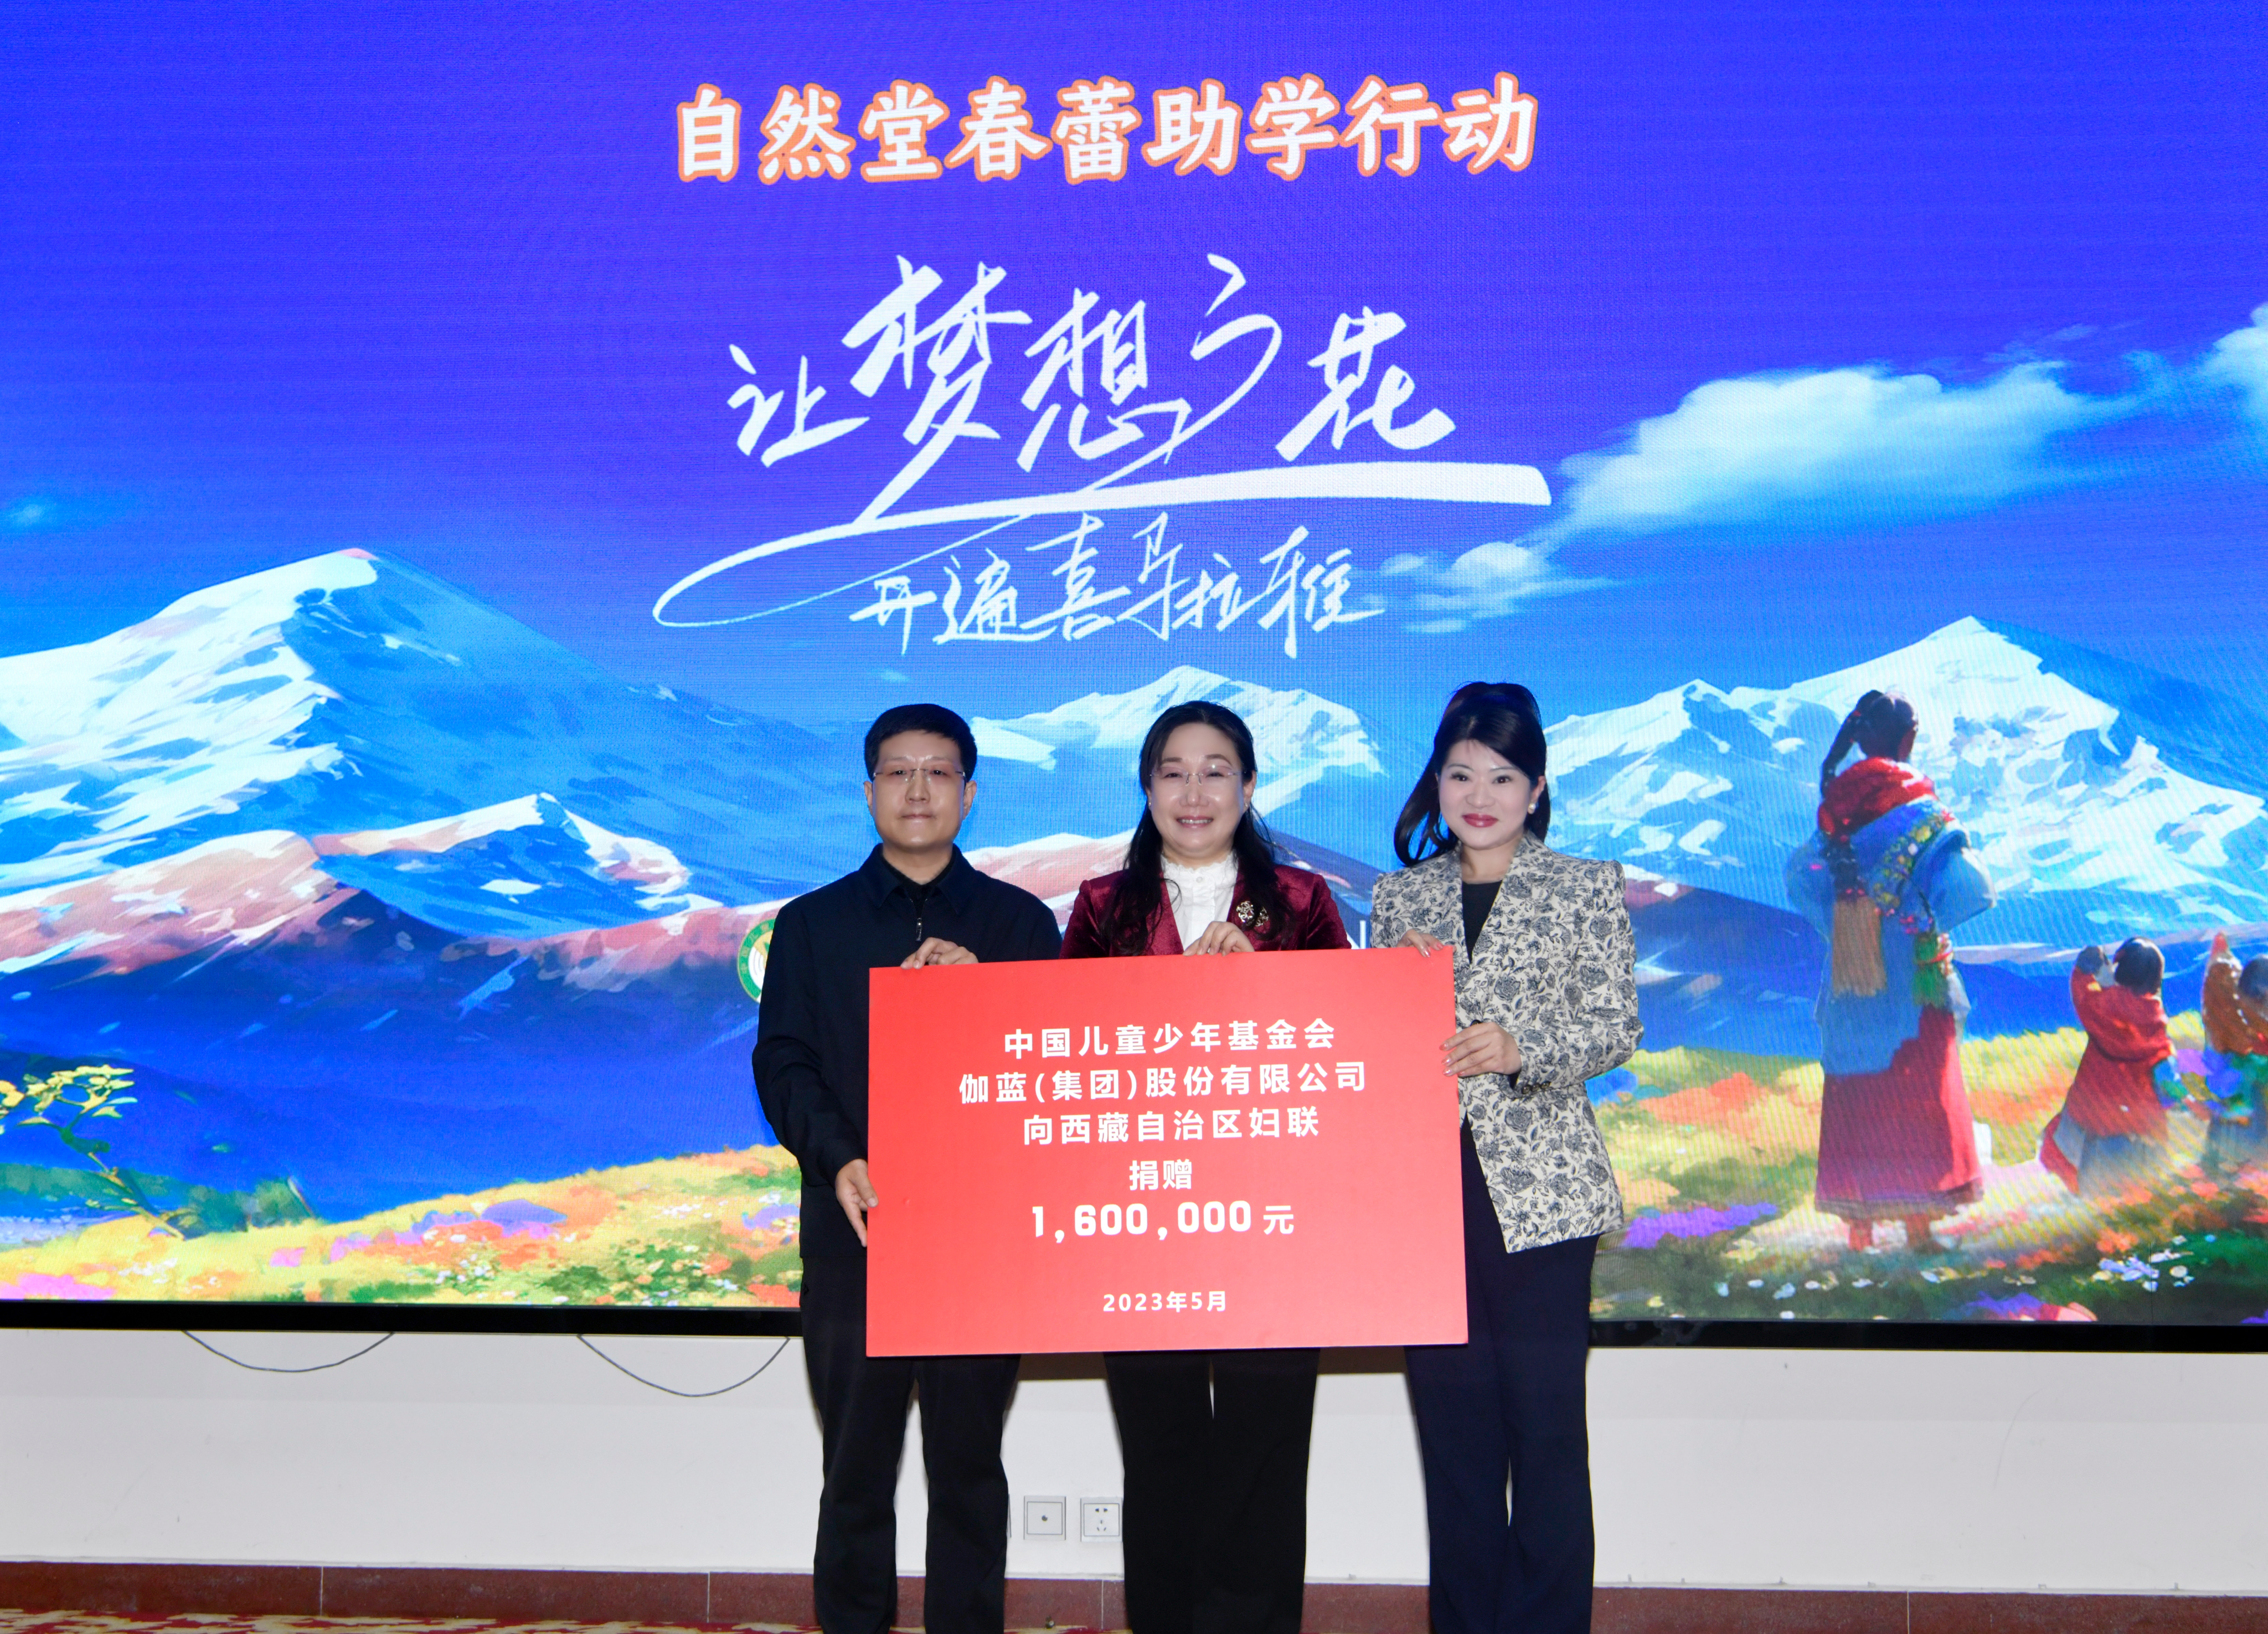 伽蓝集团联合中国儿童少年基金会向西藏自治区妇联捐赠160万元